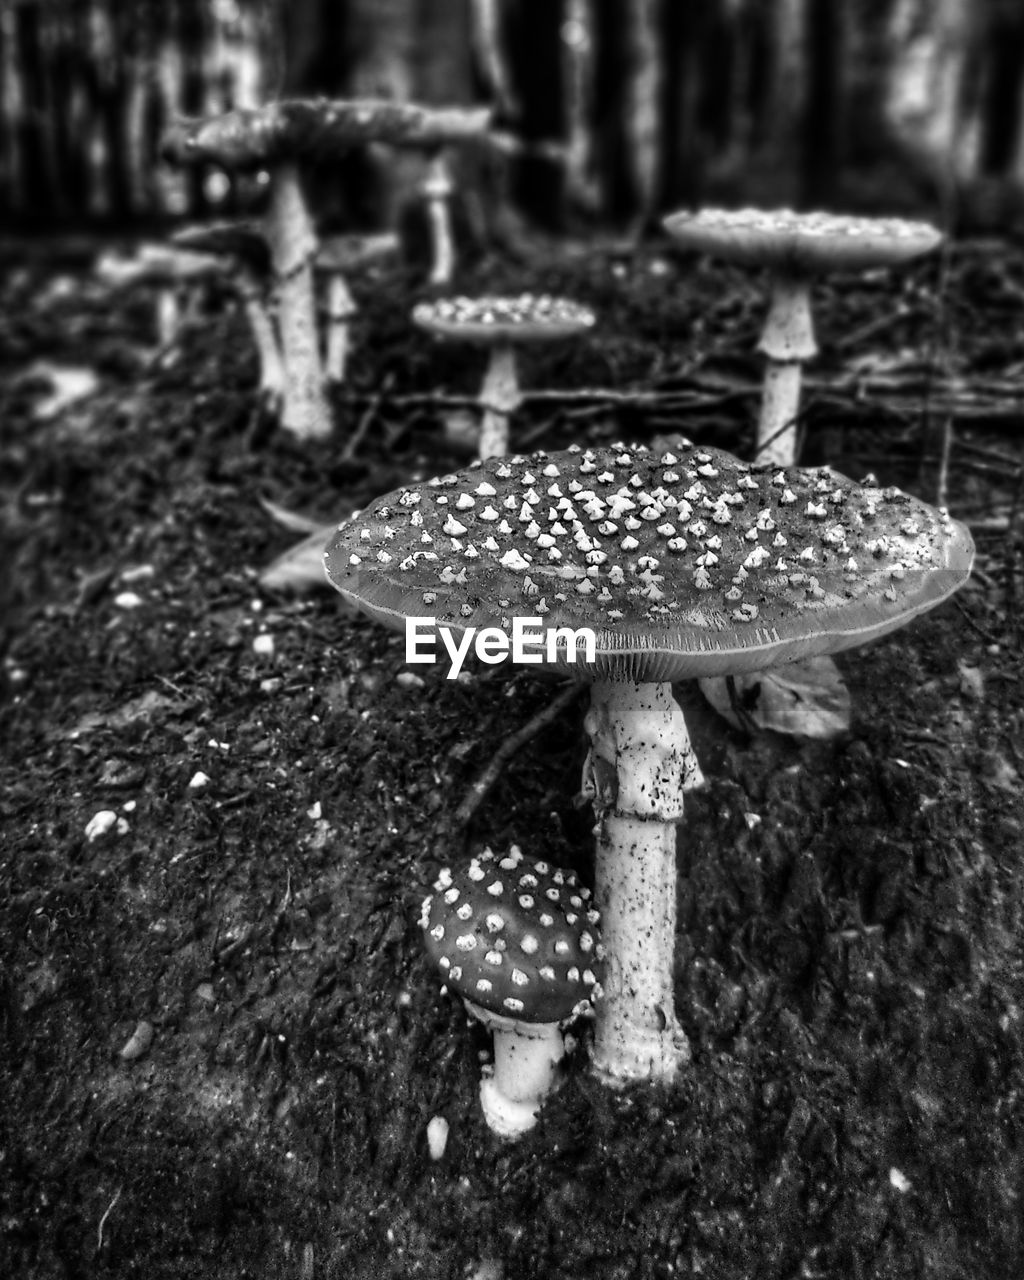 Mushrooms in autumn